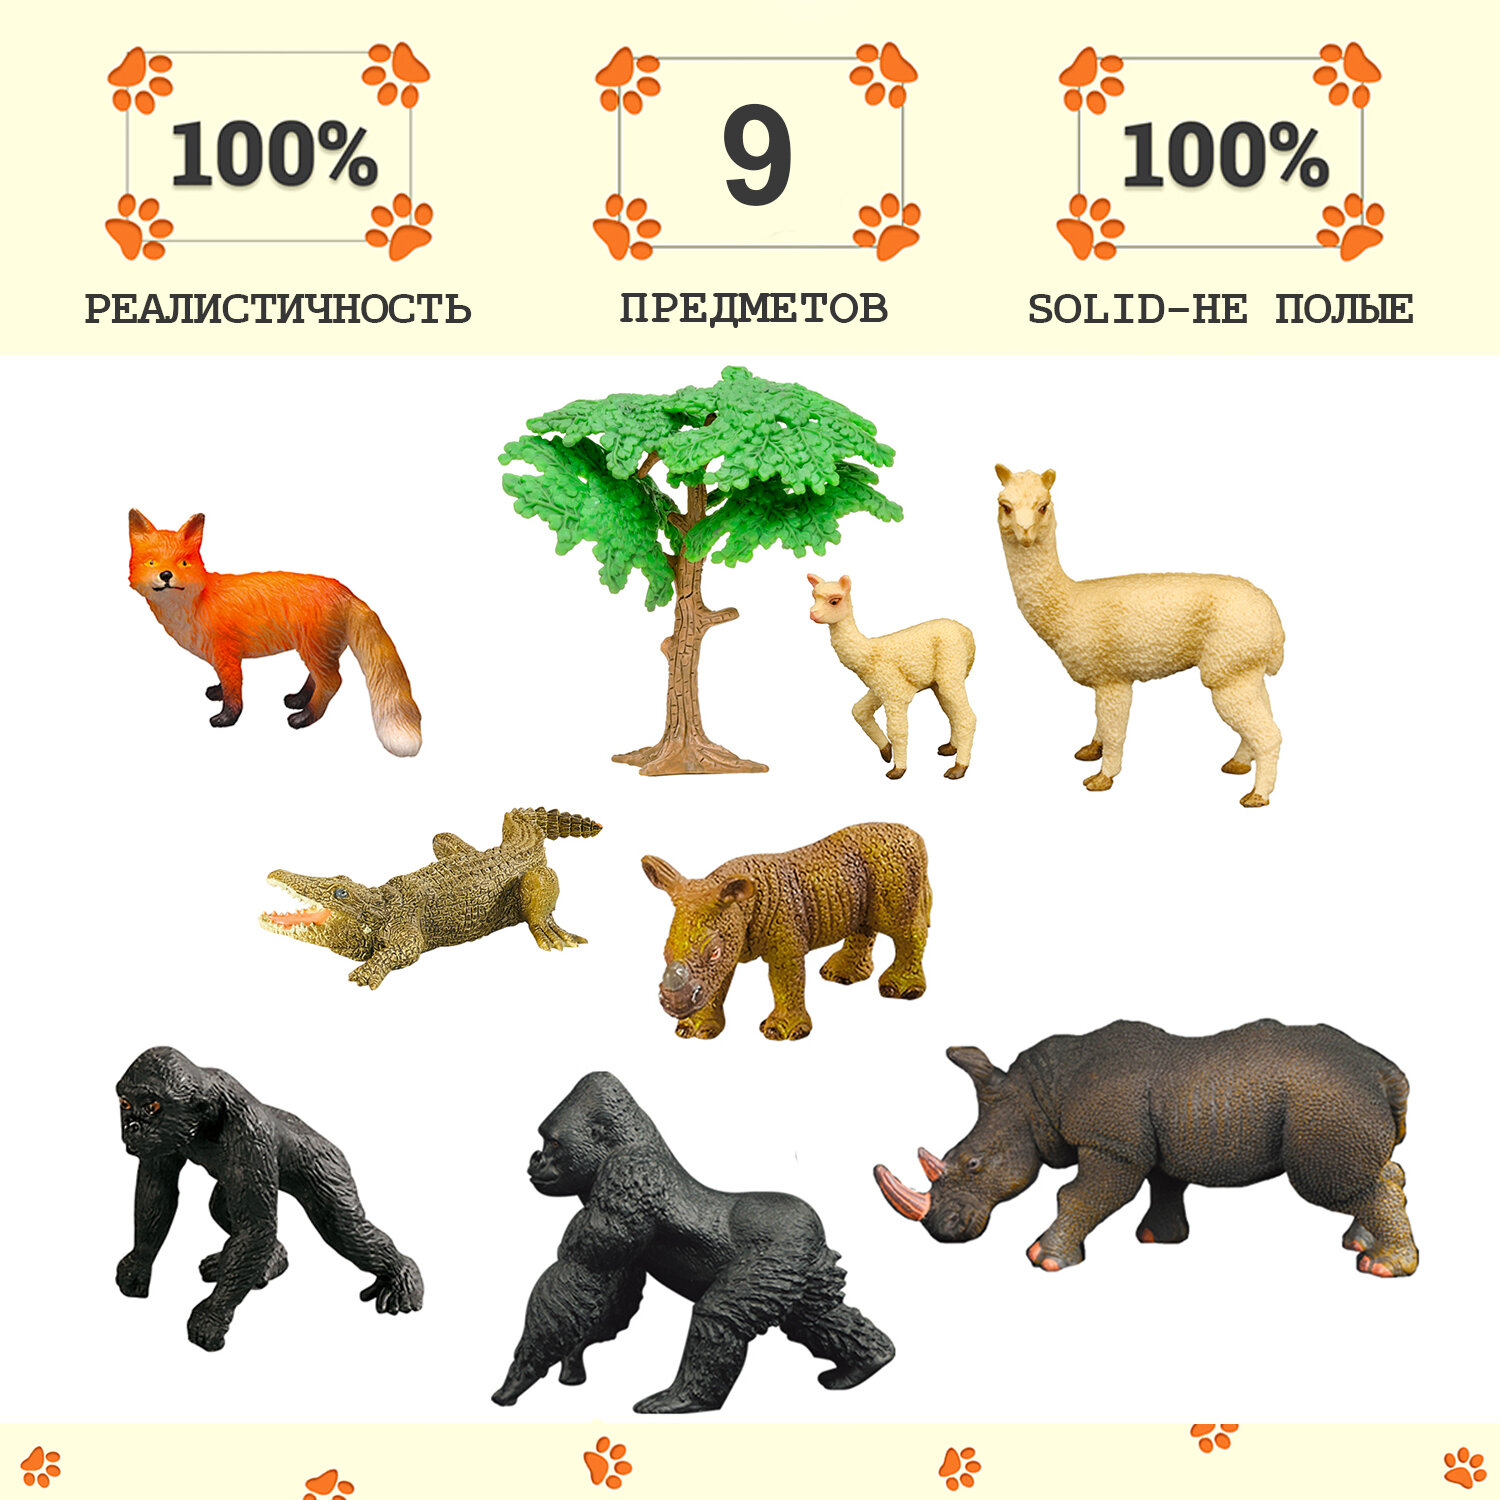 Набор фигурок животных серии "Мир диких животных": крокодил, 2 носорога, 2 ламы, 2 гориллы, лиса (набор из 9 предметов)